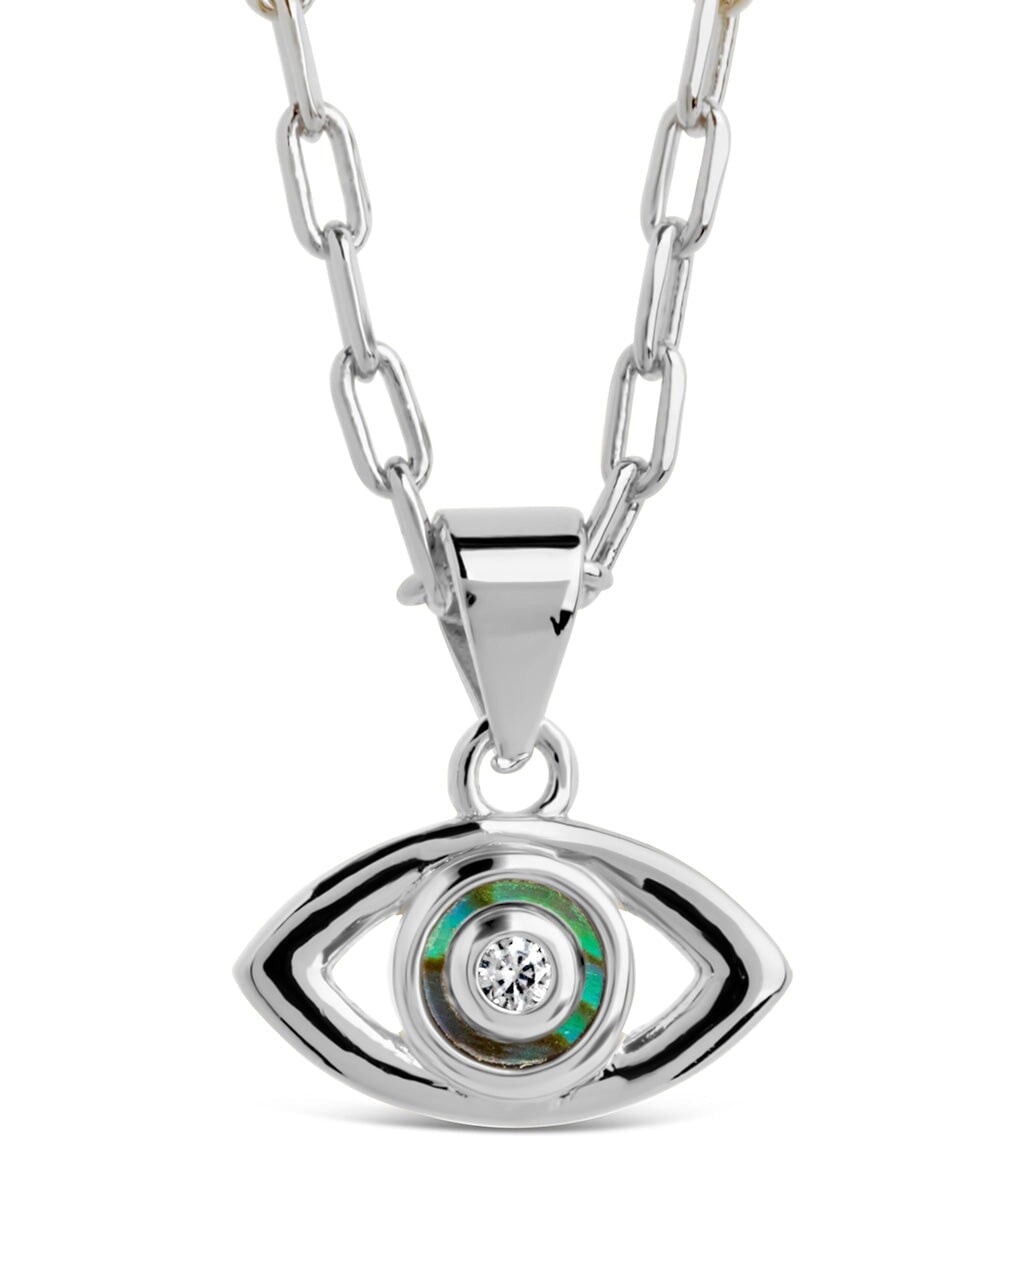 Mother of Pearl & CZ Evil Eye Bracelet and Necklace Set Bundles Sterling Forever 